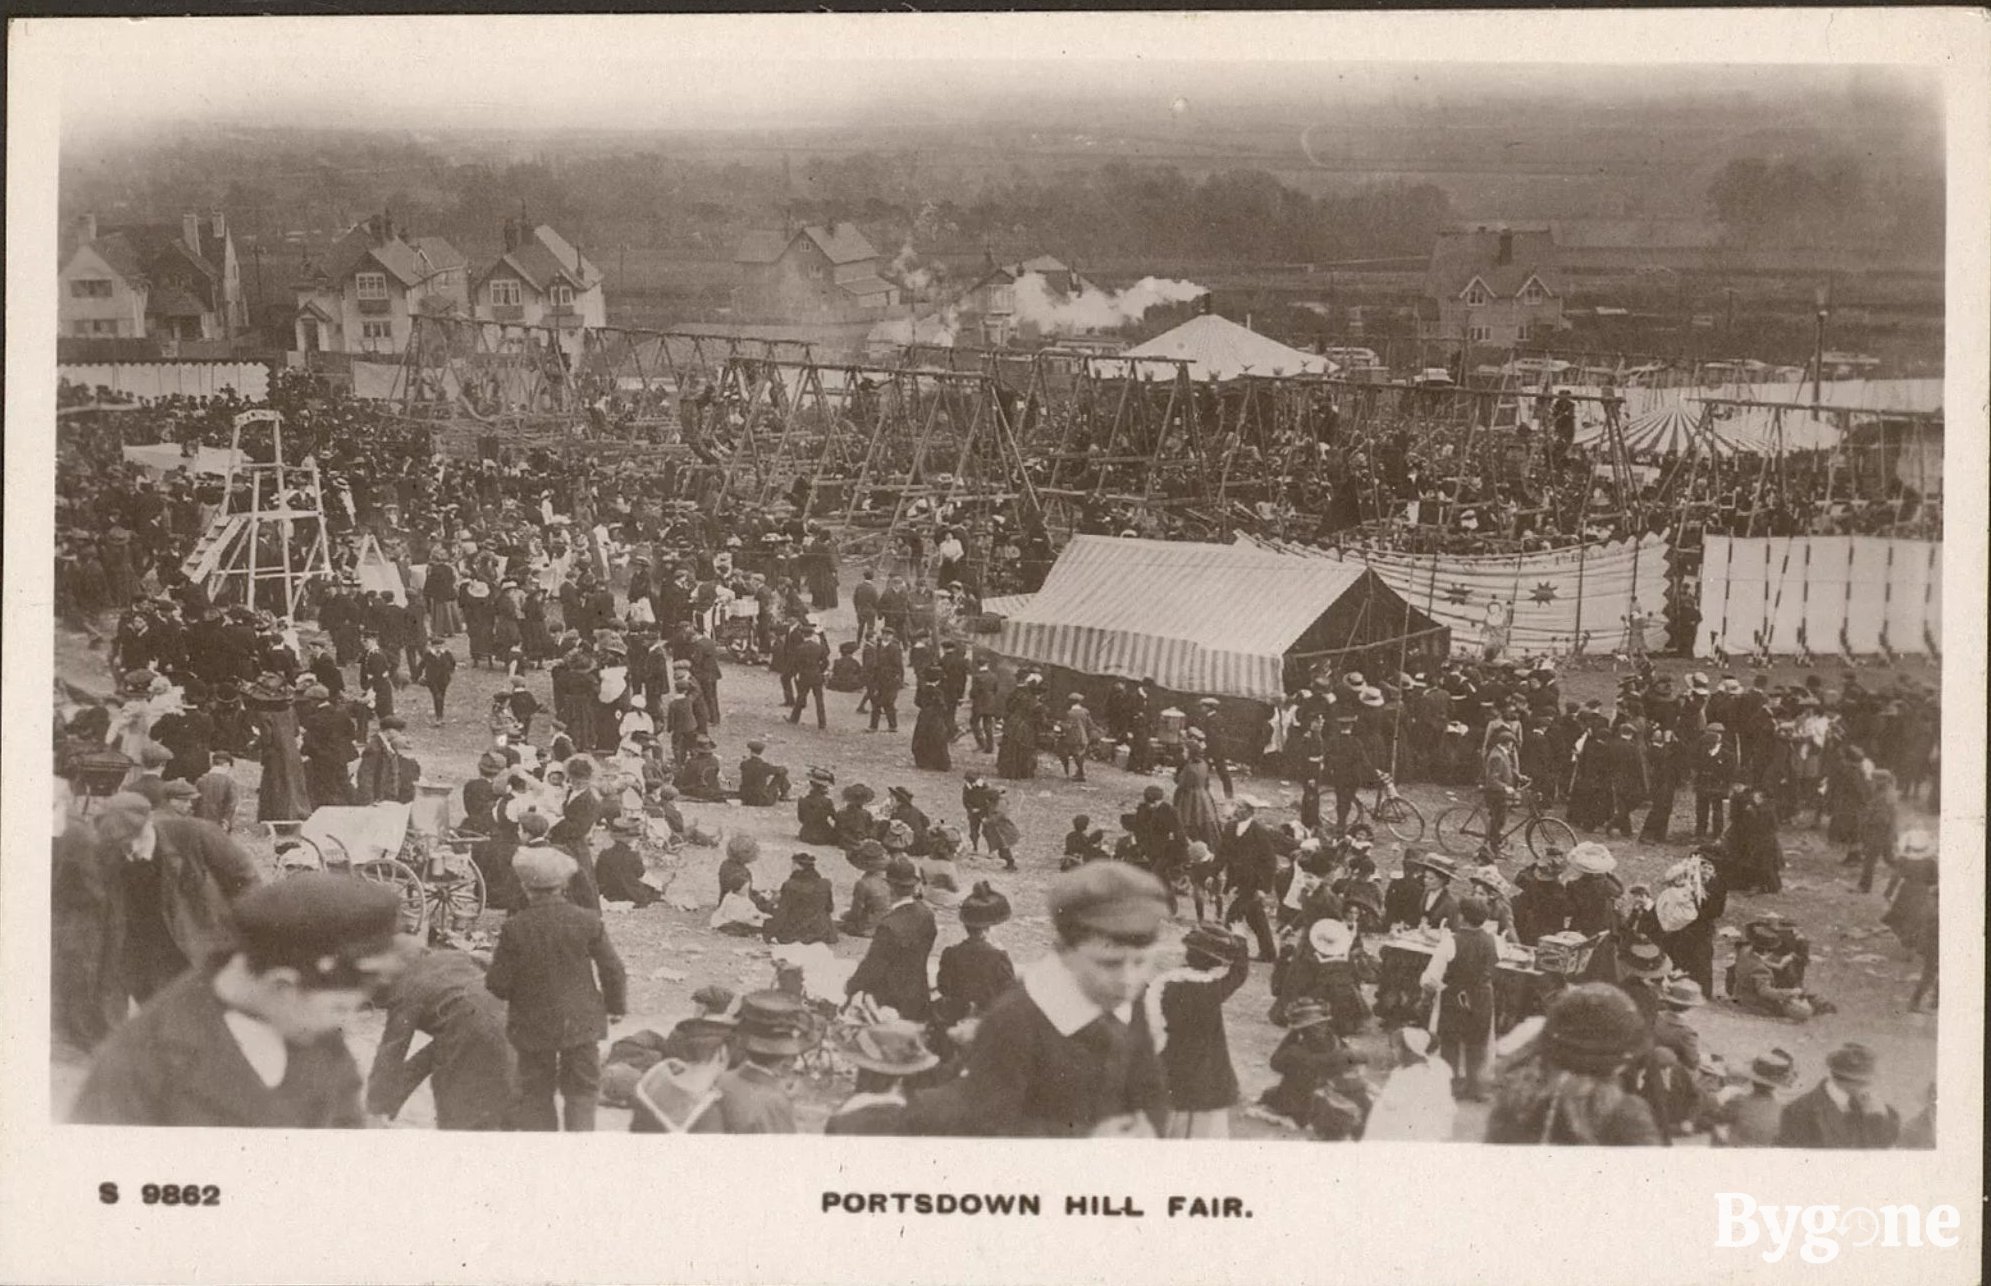 Portsdown Hill Fair